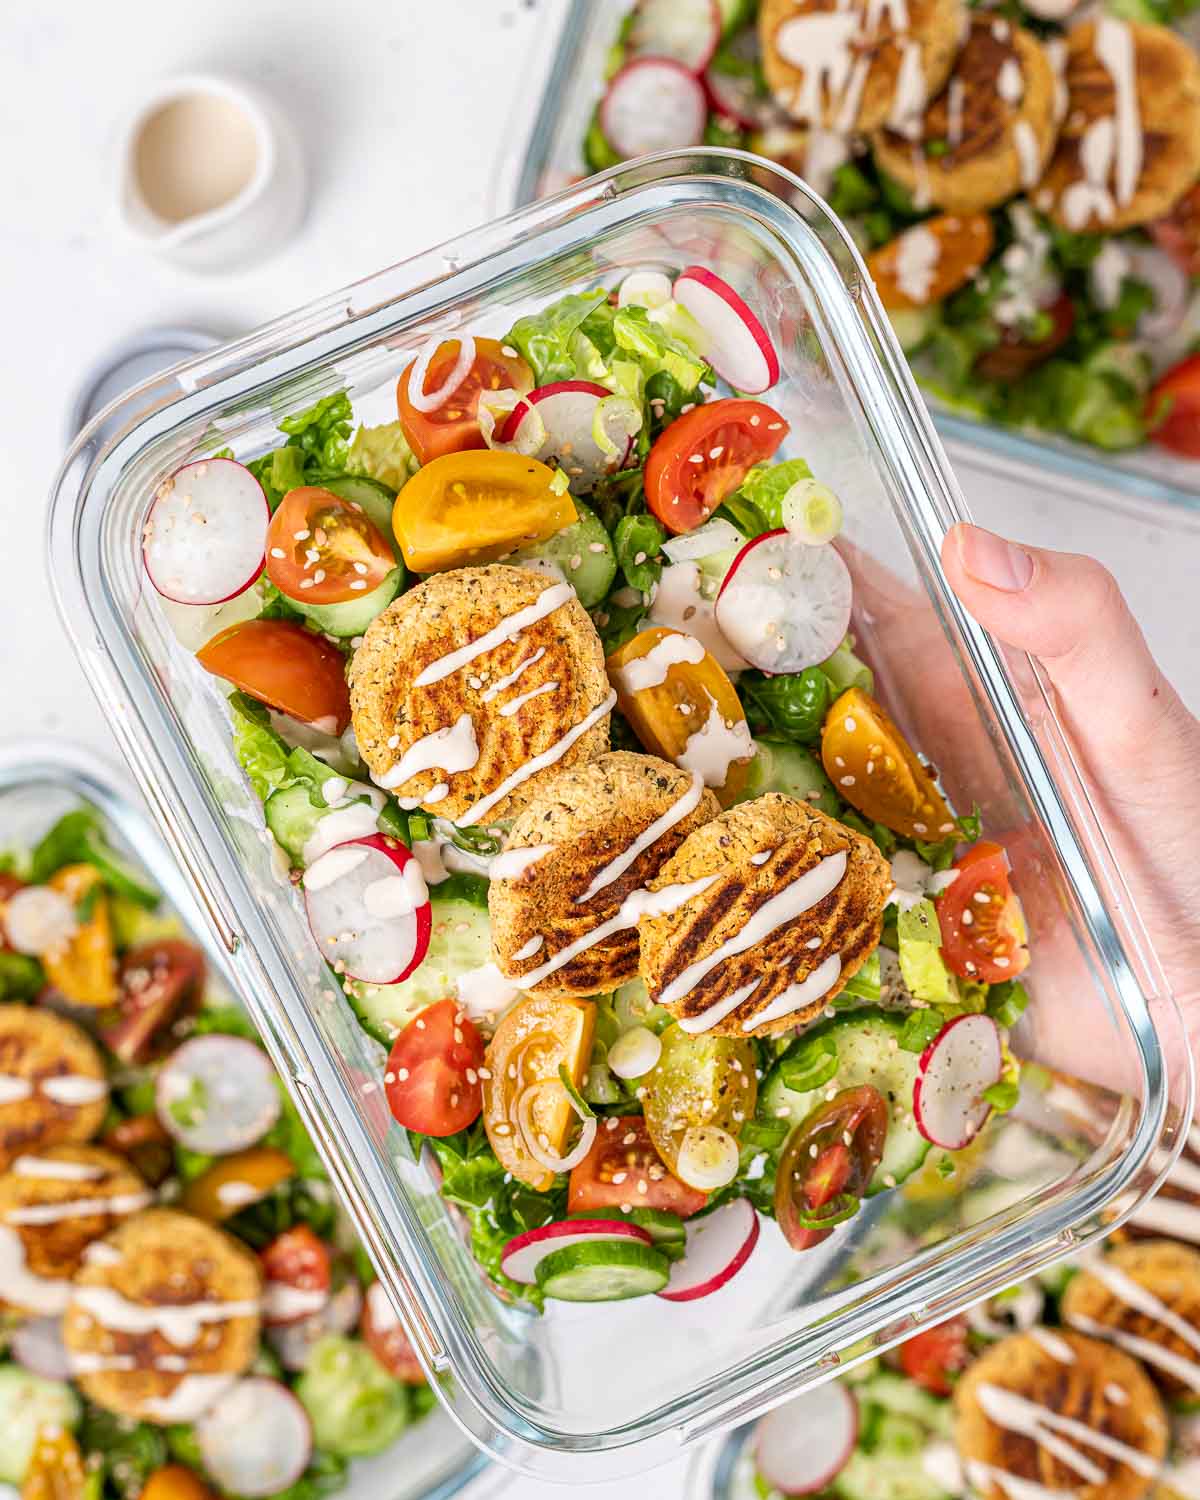 https://cleanfoodcrush.com/wp-content/uploads/2023/05/Falafel-Salad-Meal-Prep-Bowls-1.jpg